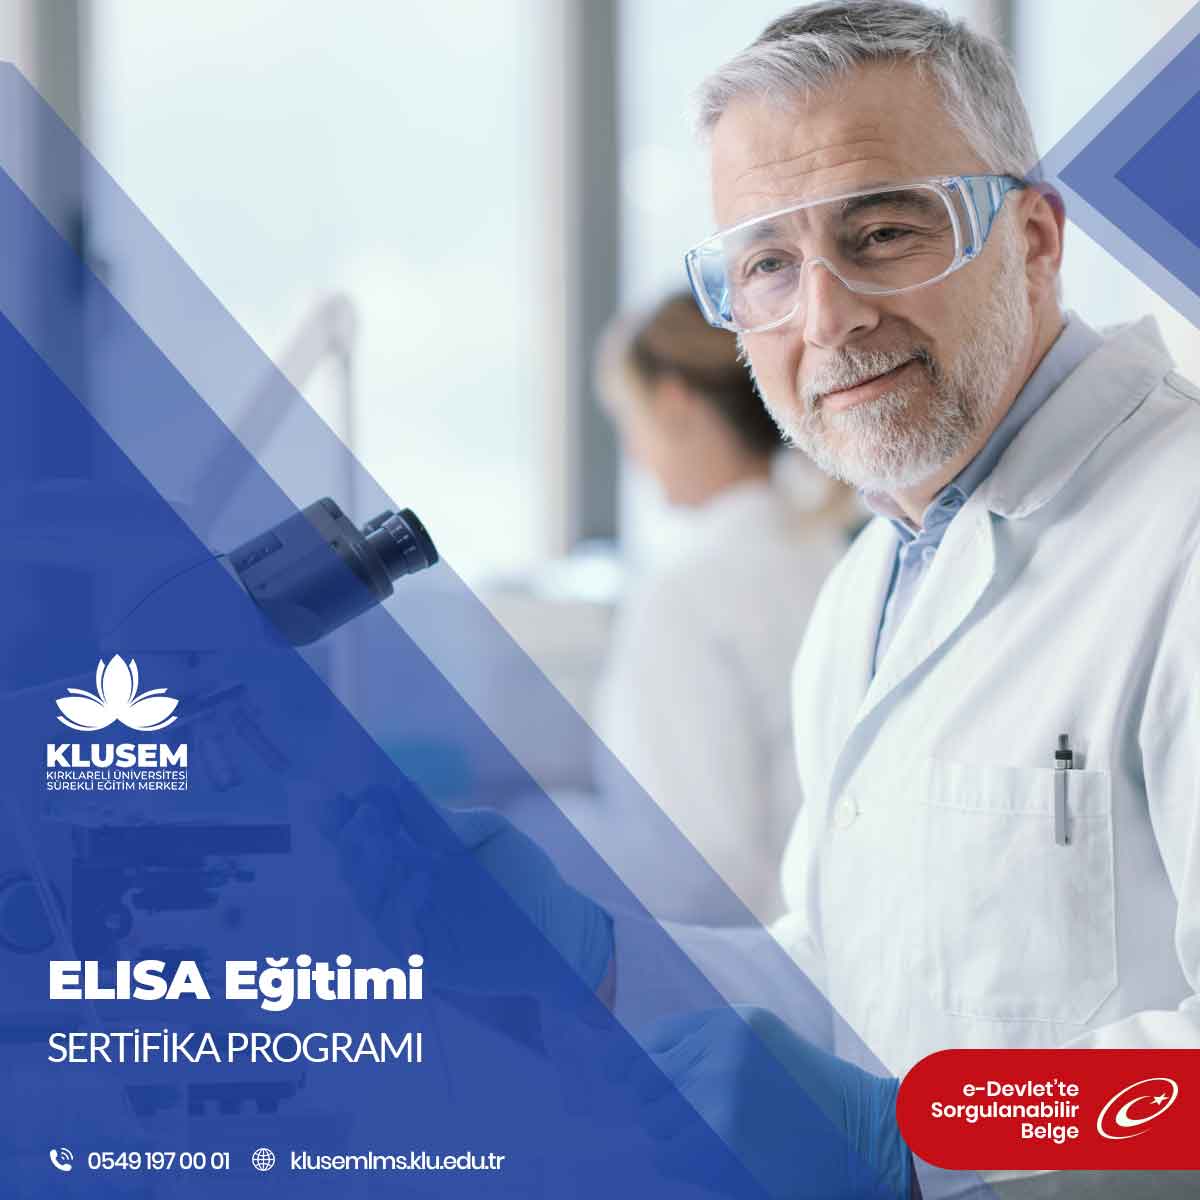 ELISA Eğitimi Sertifika Programı